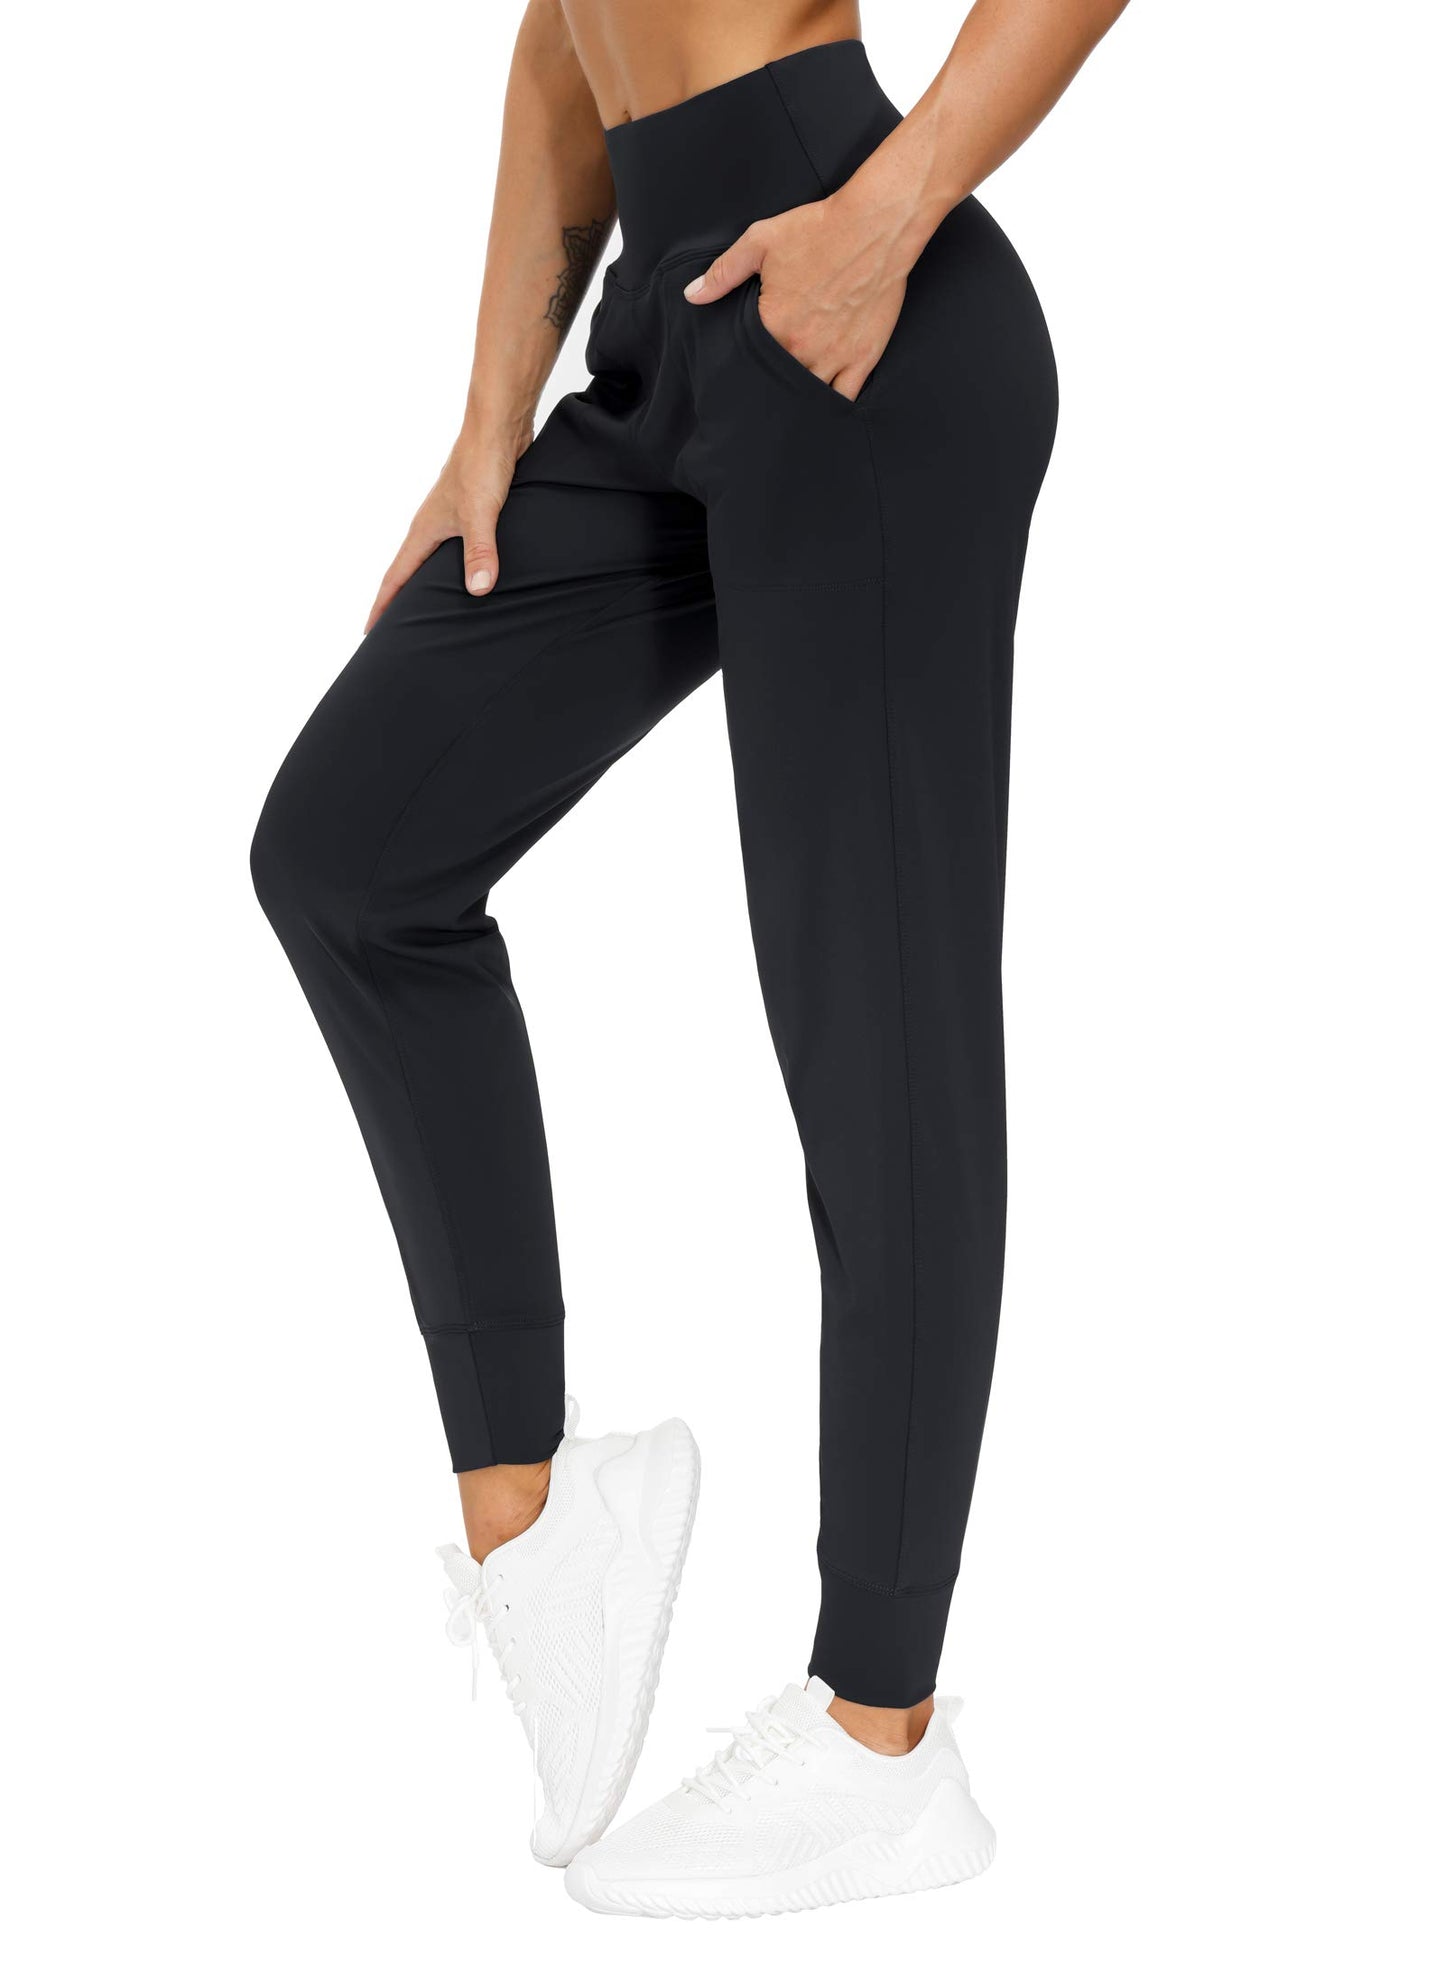 THE GYM PEOPLE Pantalones deportivos para mujer con bolsillos, leggings deportivos, pantalones cónicos para entrenamiento, yoga, correr, entrenamiento (mediano, negro)